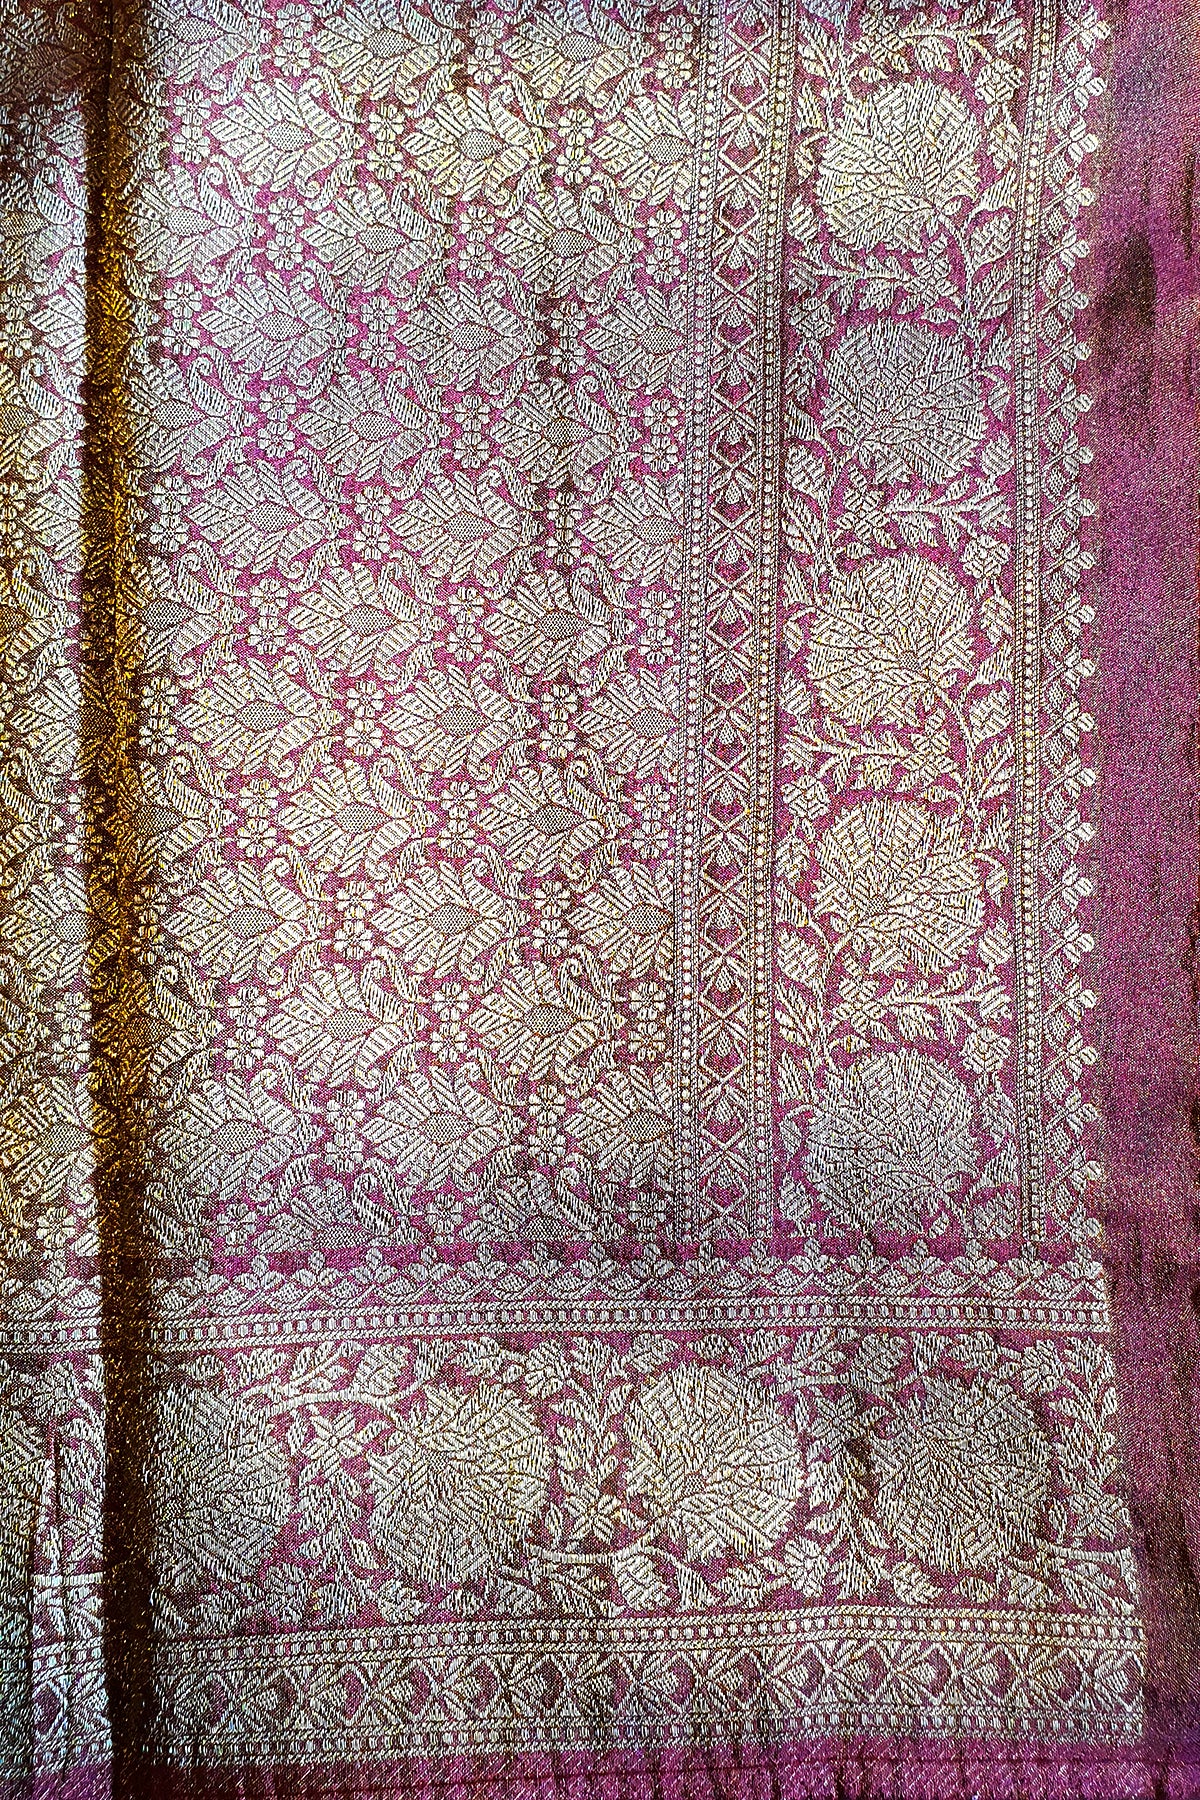 Maroon Banarasi Silk Zari Woven Saree